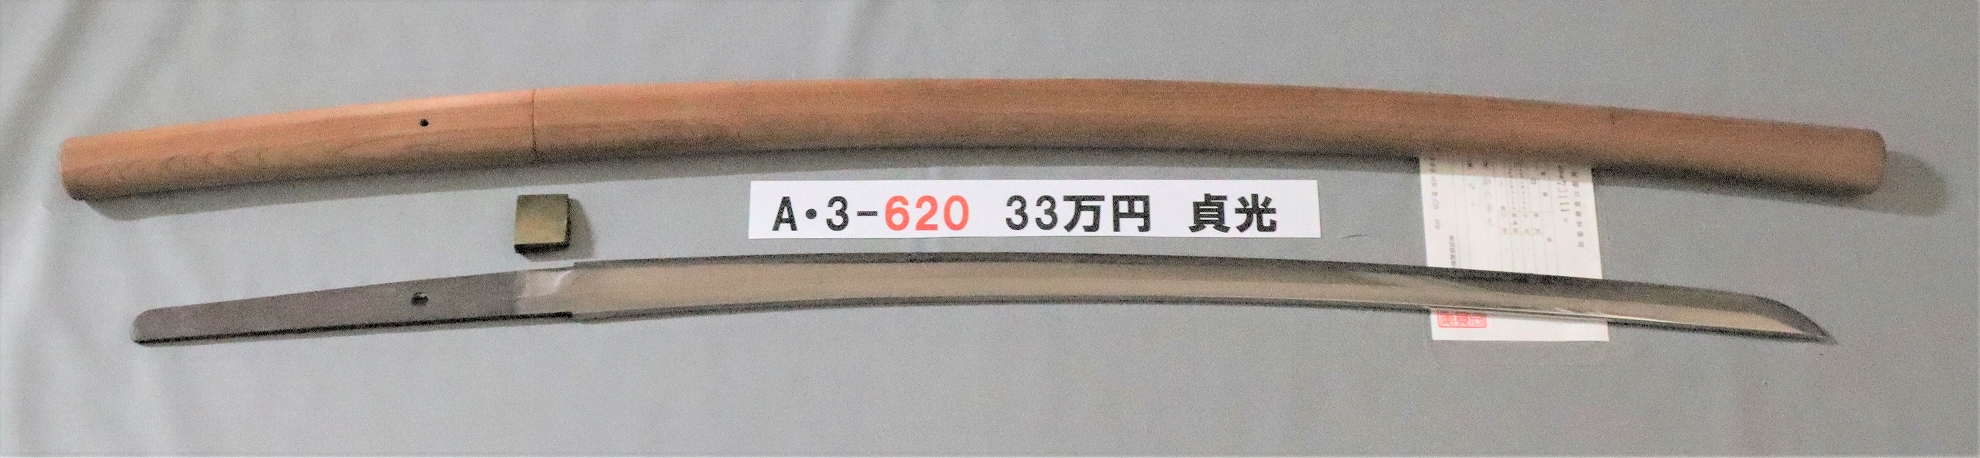 A3620